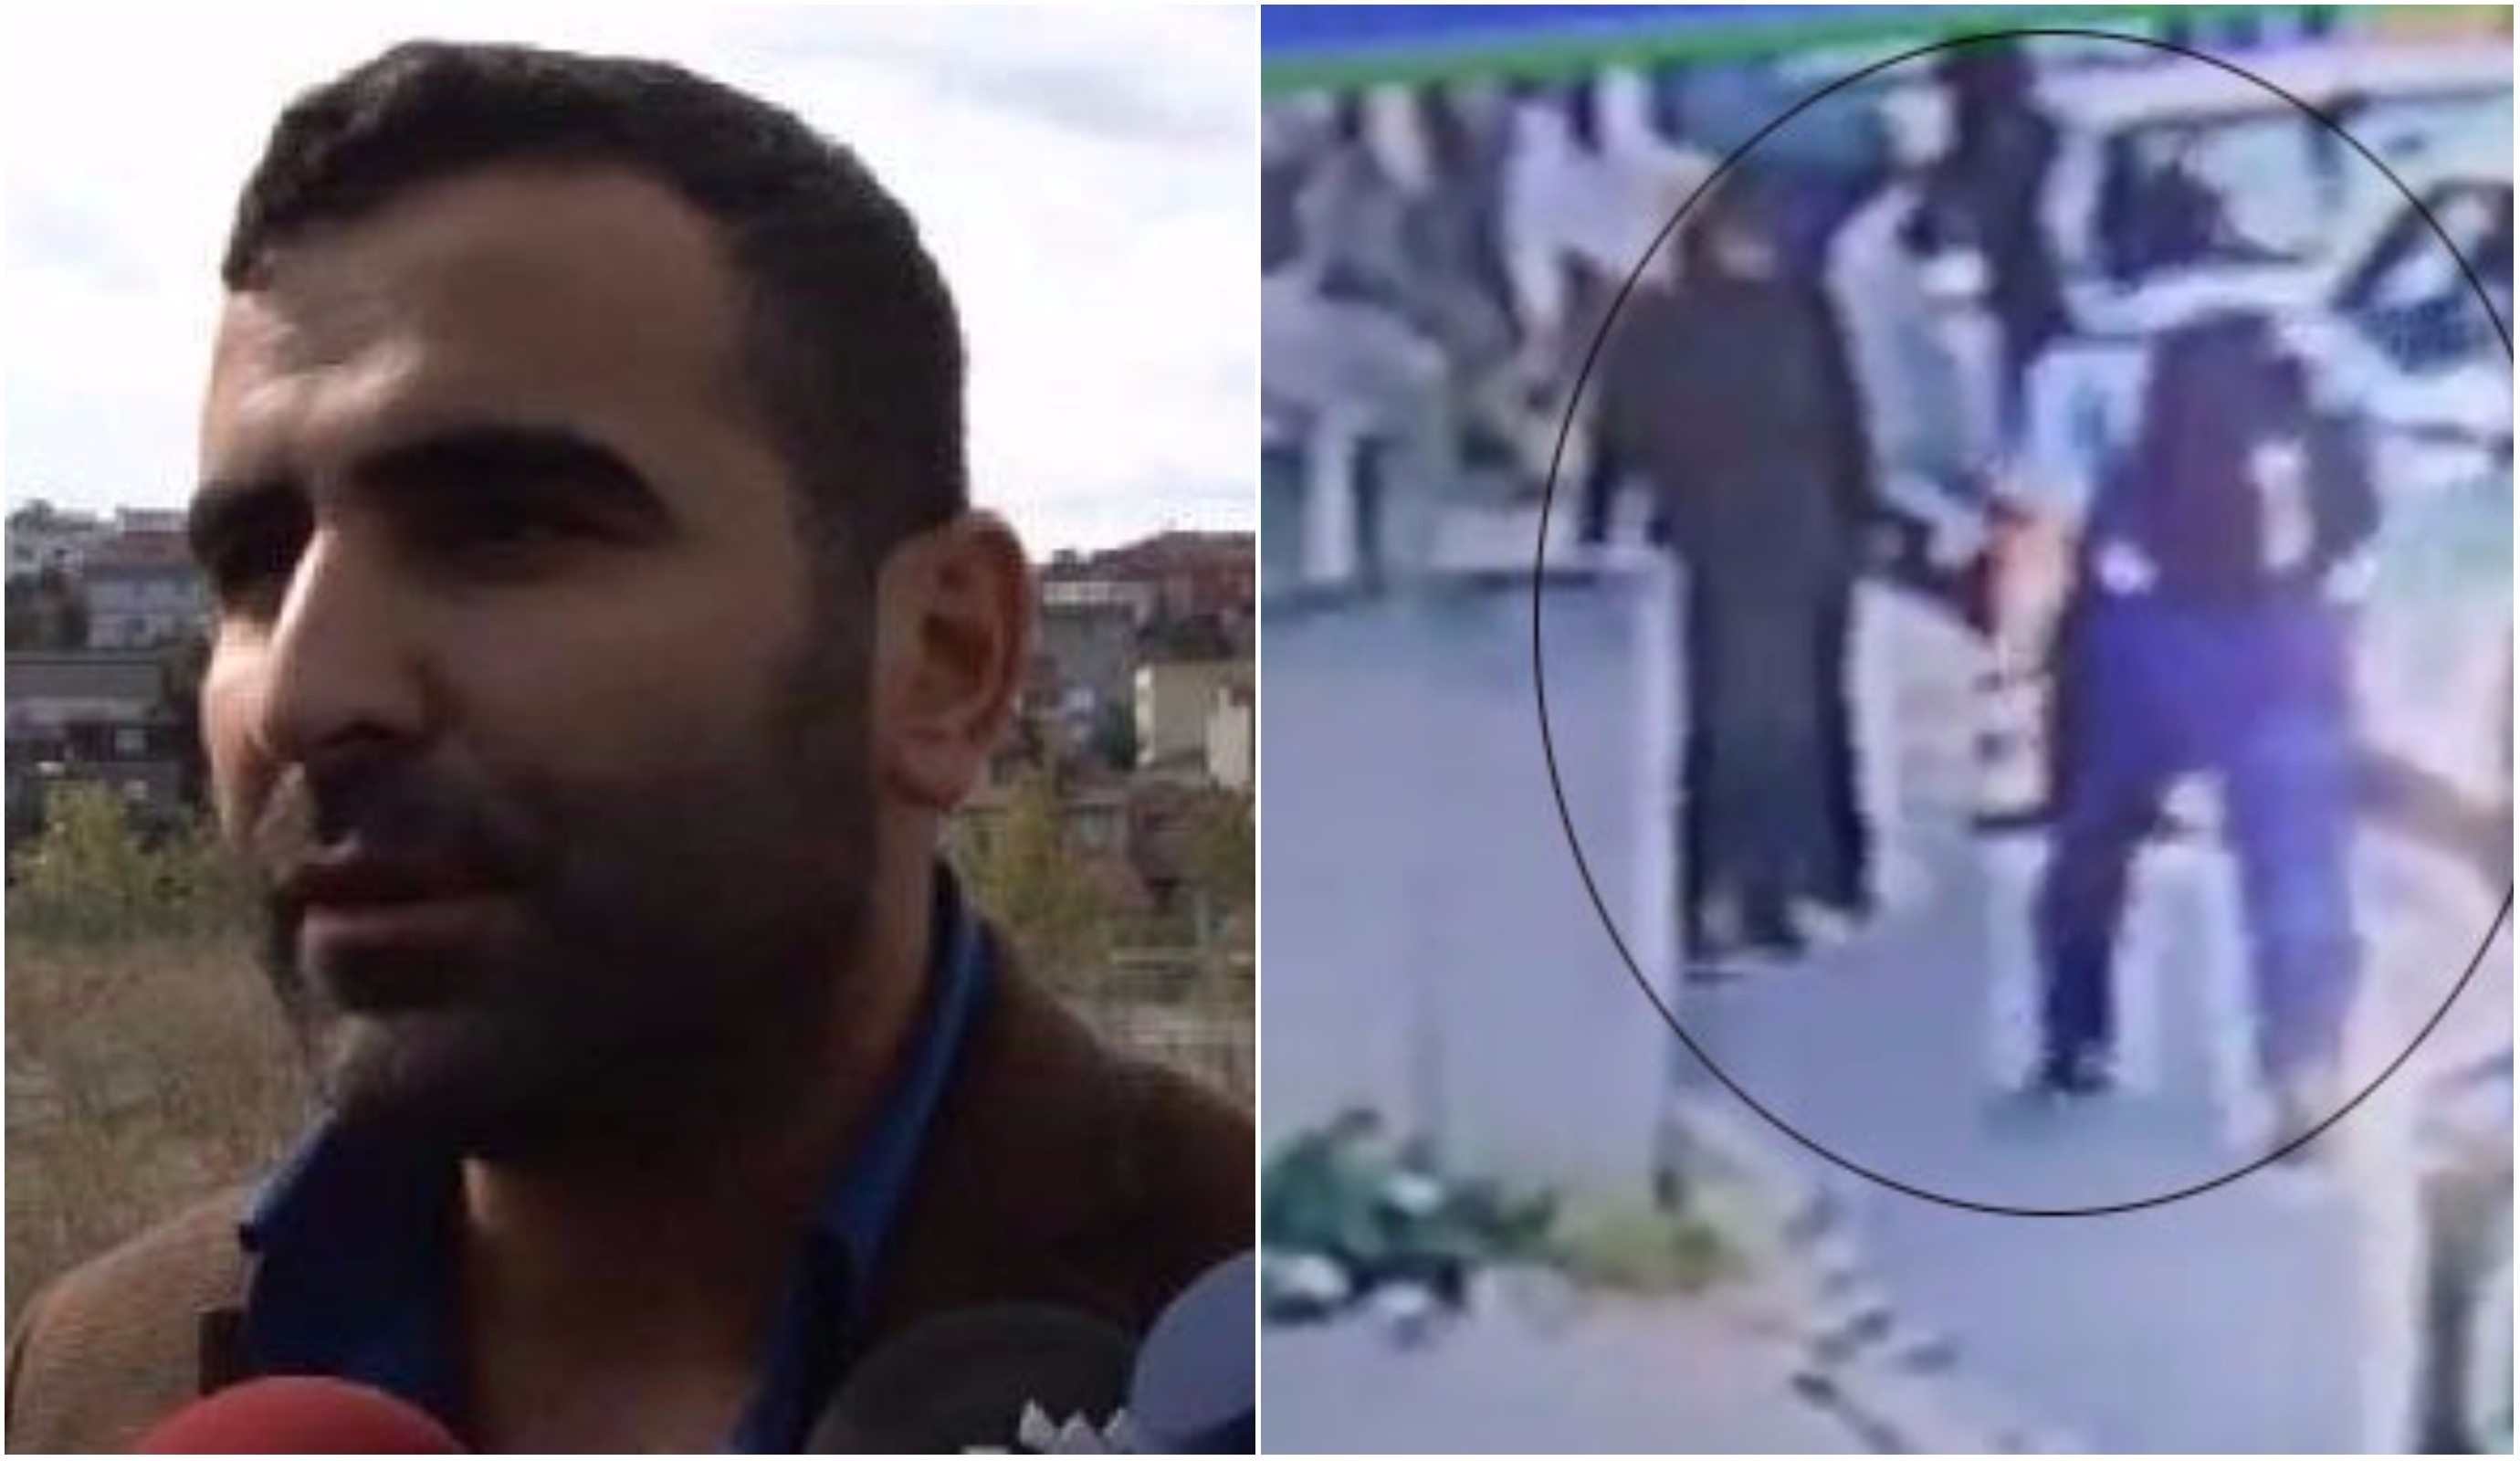 Ataşehir'de kadına saldıran kişinin ağabeyi konuştu: Psikolojik tedavi görüyordu, olay başörtülüye saldırı değil